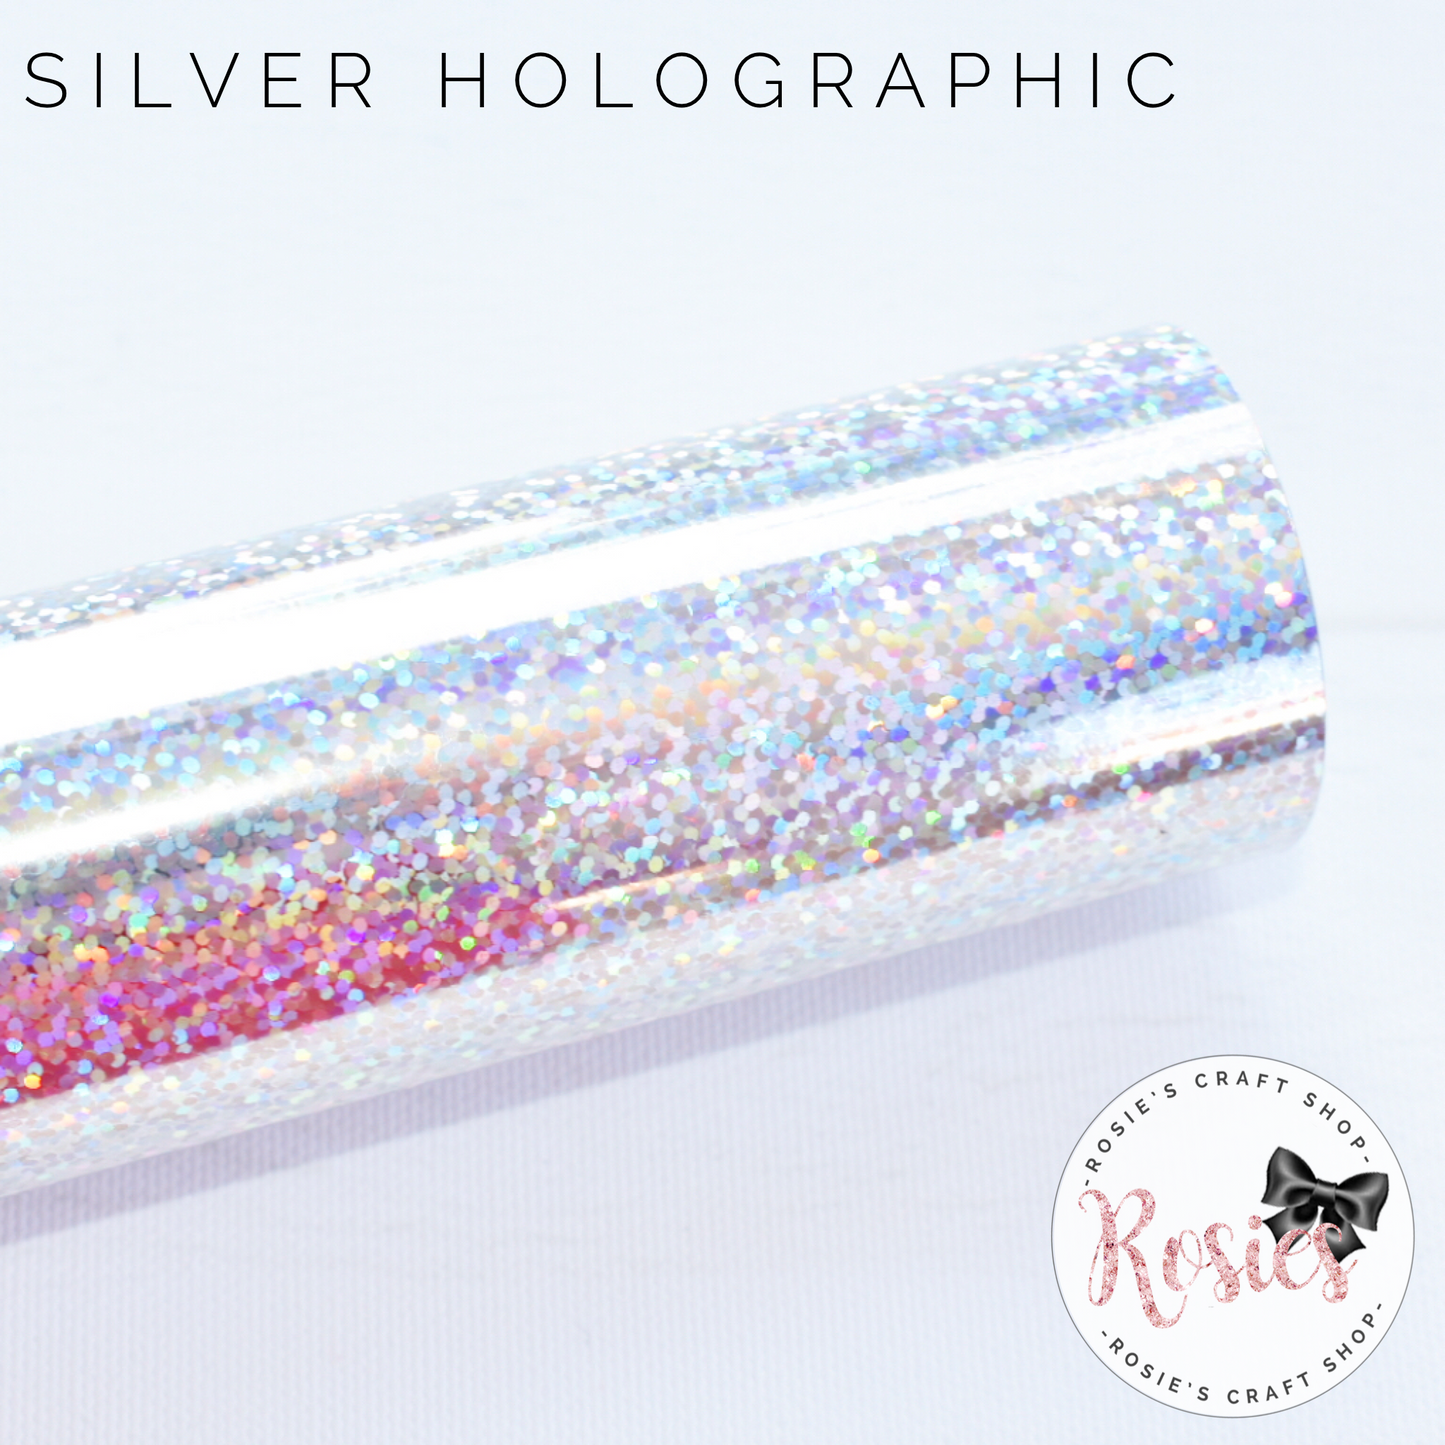 Silver Holographic Sparkle Iron On Vinyl HTV - Rosie's Craft Shop Ltd